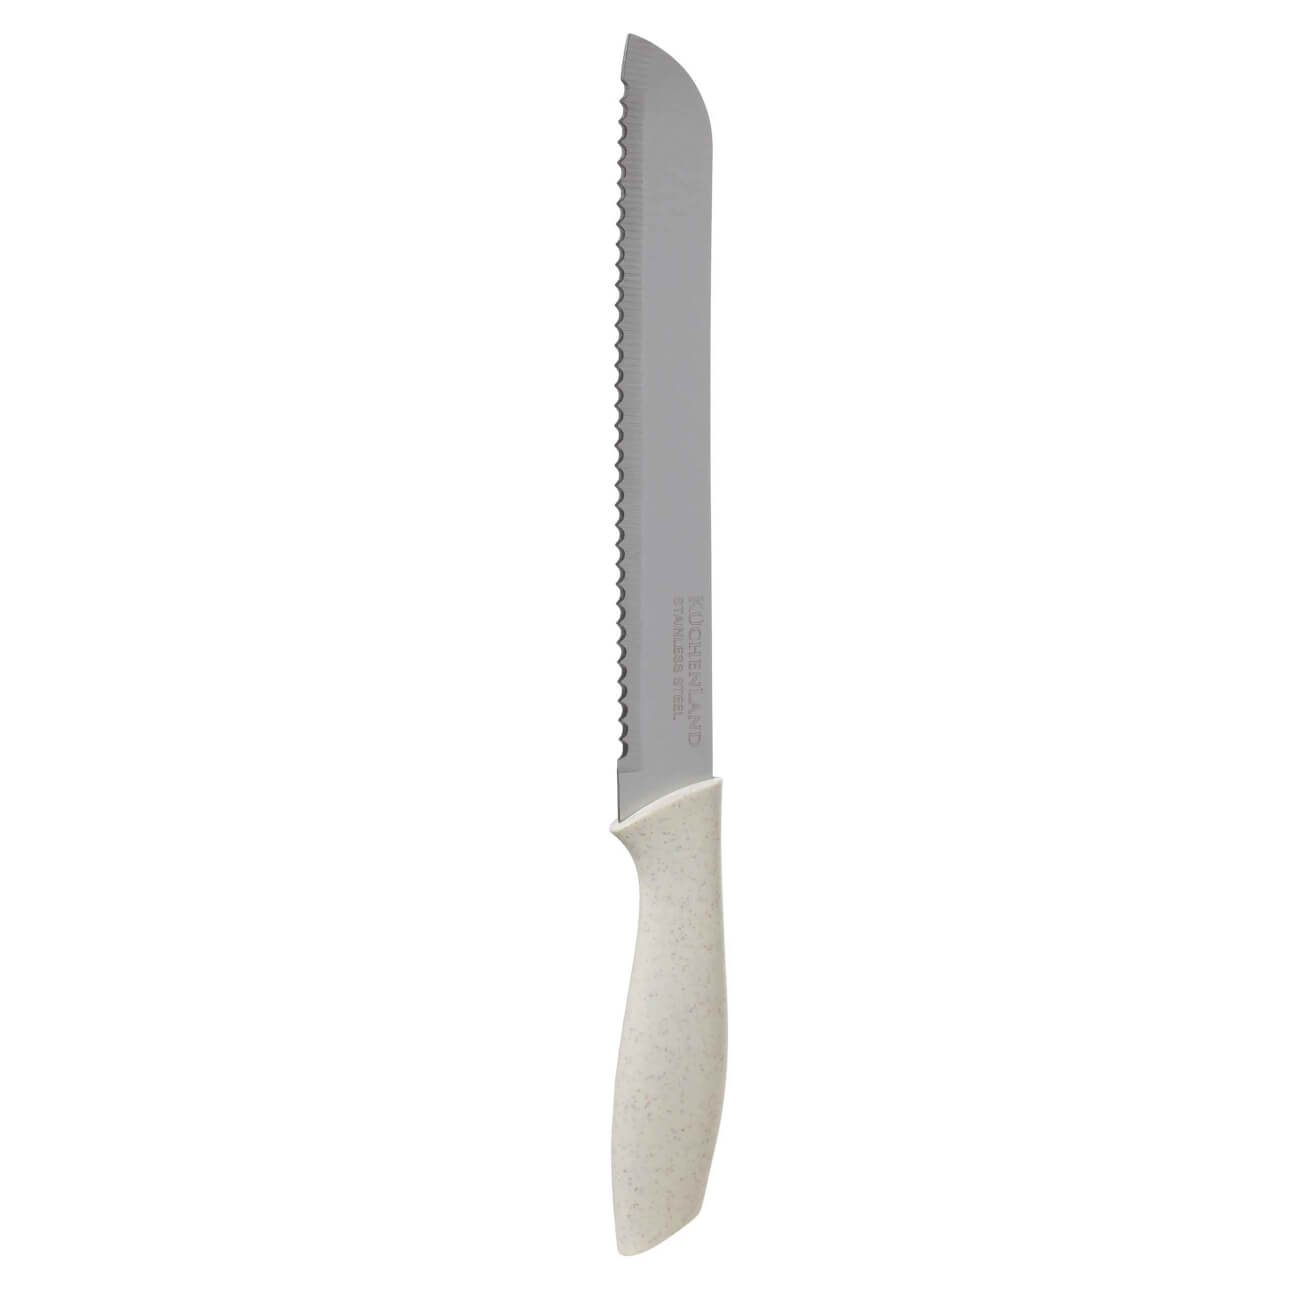 Нож хлебный, 20 см, сталь/пластик, молочный, Speck-light нож хлебный 20 см сталь пластик select